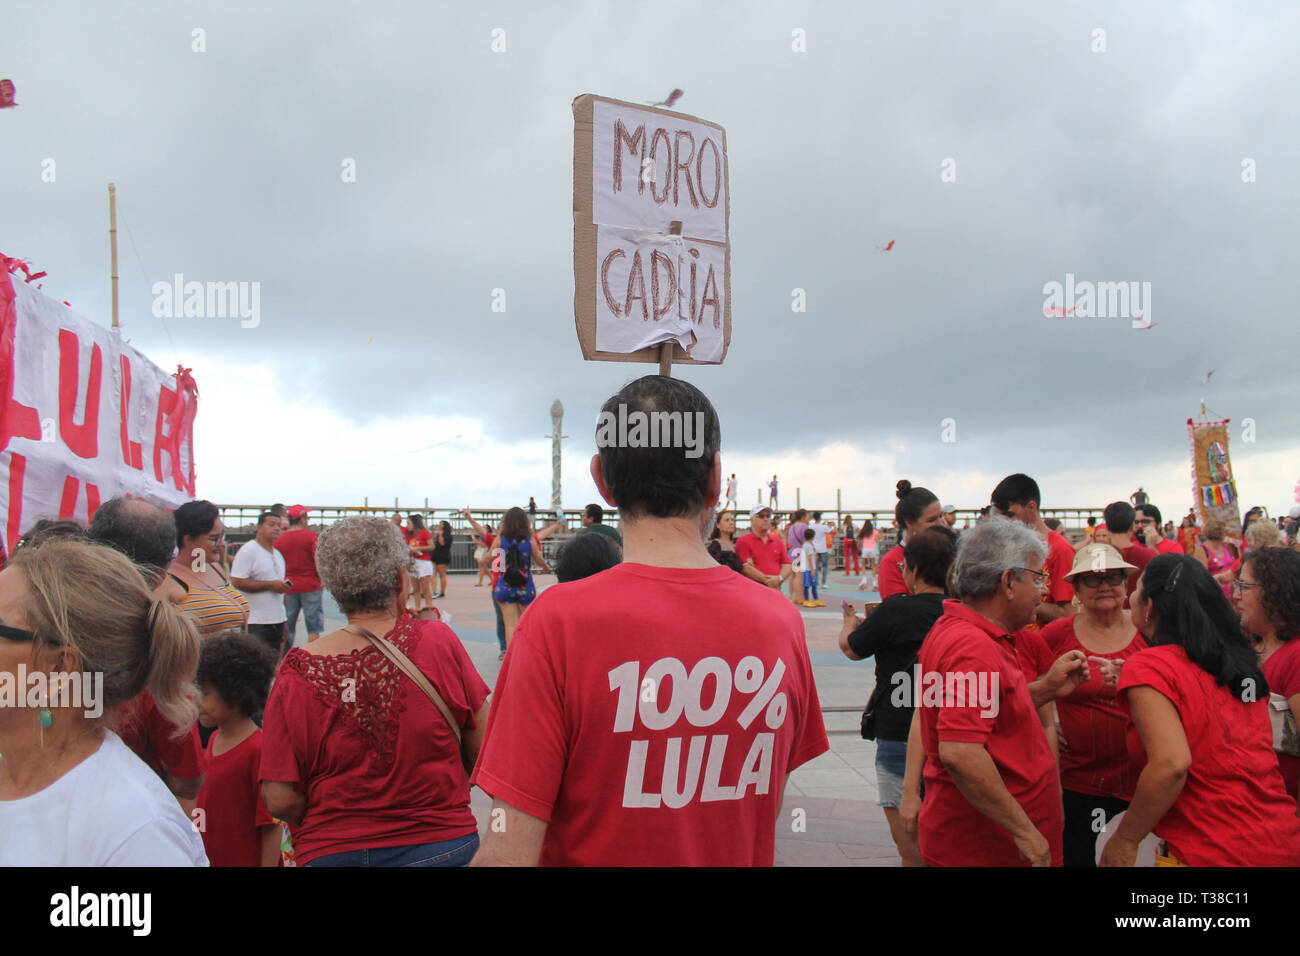 RECIFE, PE - 07.04.2019 : JORNADA LULA LIVRE NO RECIFE - Loi intitulée "Jda Lul Lula Livre de Recife, qui a eu lieu en faveur de la liberté de l'ancien Prent Lula qui complète thisthis 7 avril, une année de persécution politique selon les militants qui appellent également à la poursuite de la lutte pour la démocratie, la justice. La loi prend place dans l'Arsenal de la place de la Marine, dans le quartier de Recife, également connu comme le "Vieux Recife" au début de la loi était à 15h00 entre les attractions du carnaval de cour ; bl ; cia, Ma, Maracatu Rural, amongmong de nombreuses autres attractions. (Ph Banque D'Images